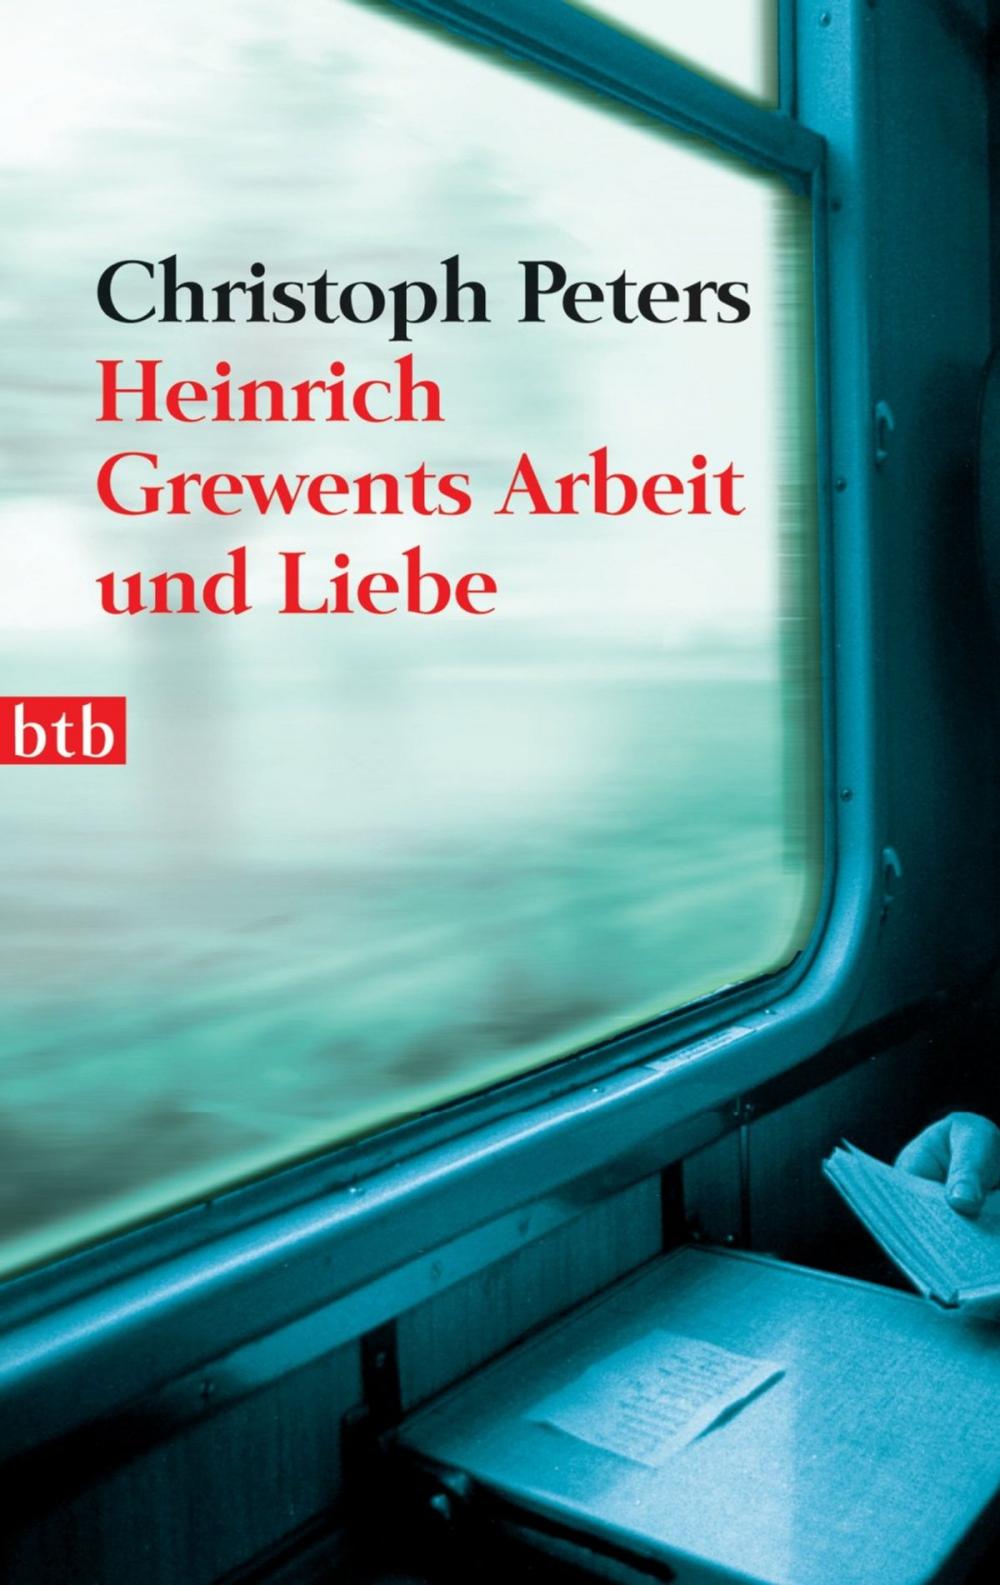 Big bigCover of Heinrich Grewents Arbeit und Liebe